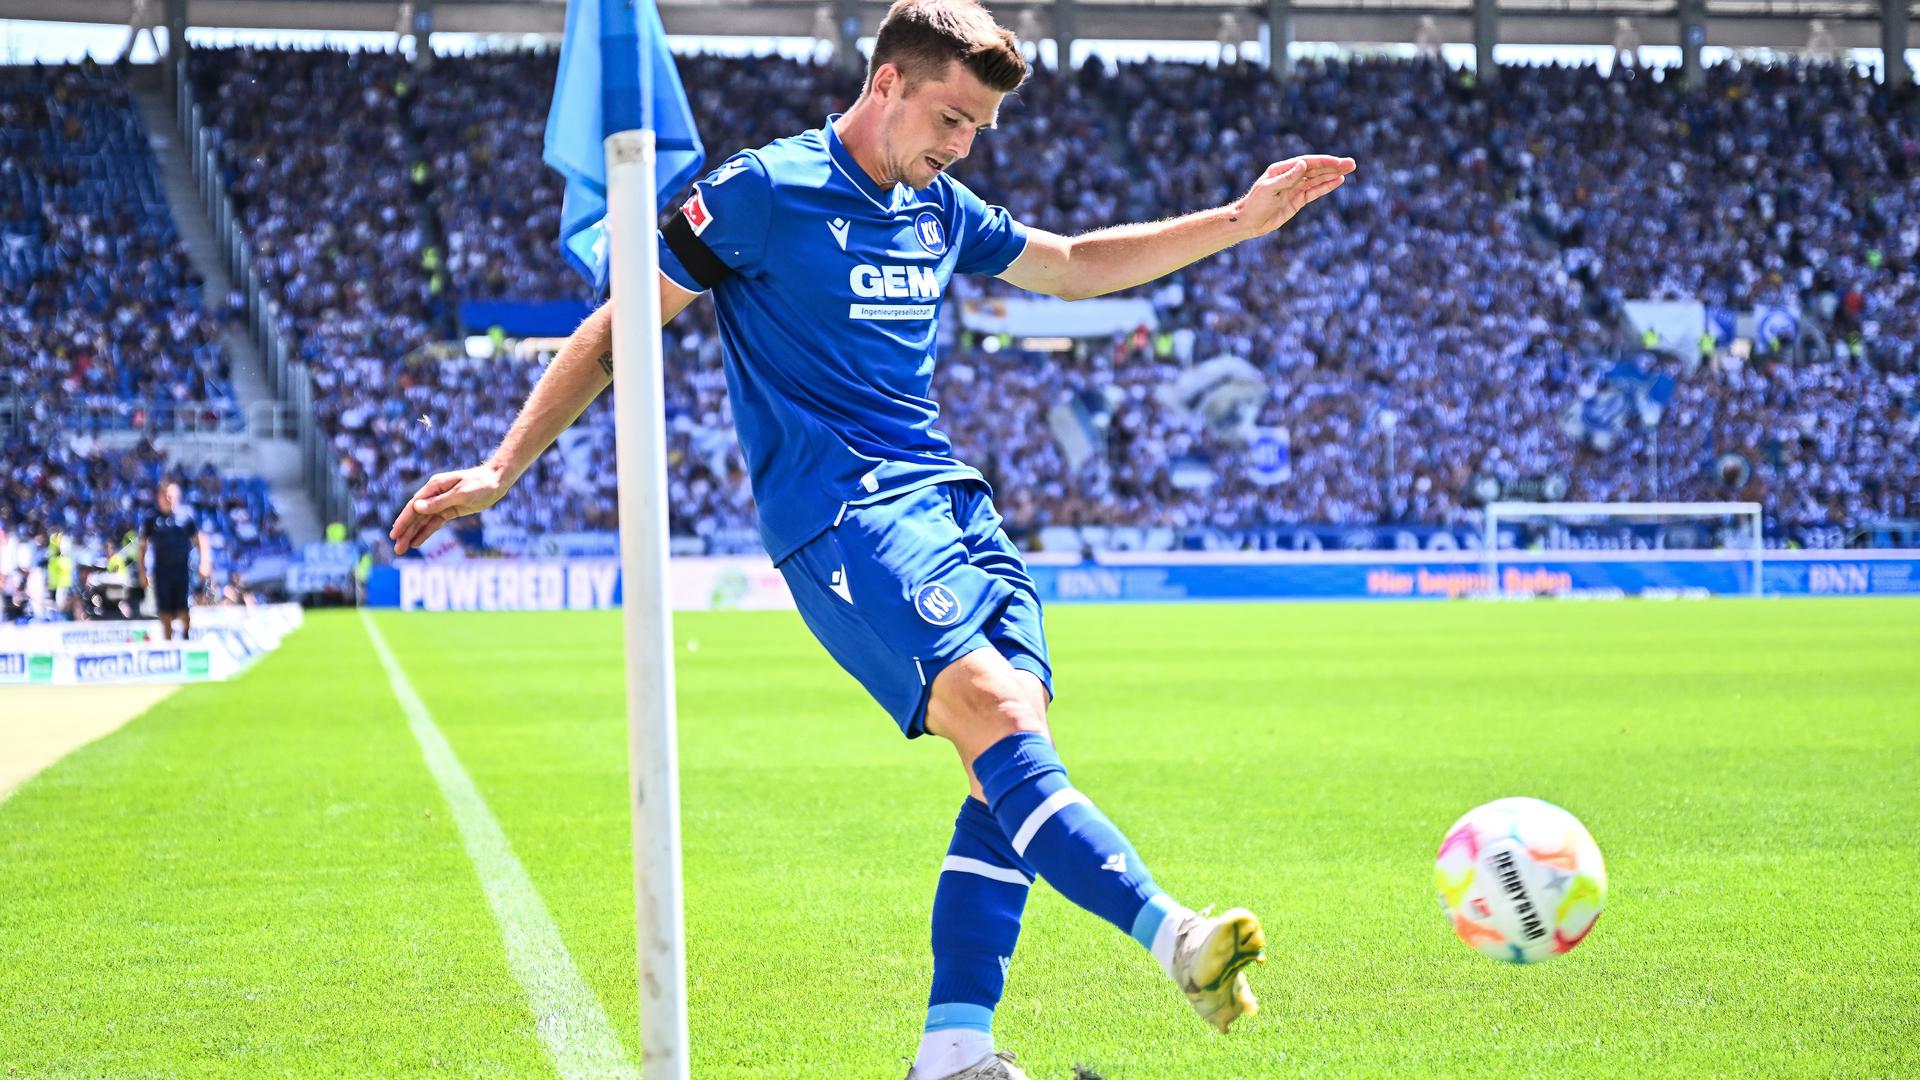 Fleißiger Standardschütze: Der beim KSC gereifte Marvin Wanitzek gehört zu den Top-Mittelfeldspielern der Zweiten Bundesliga.